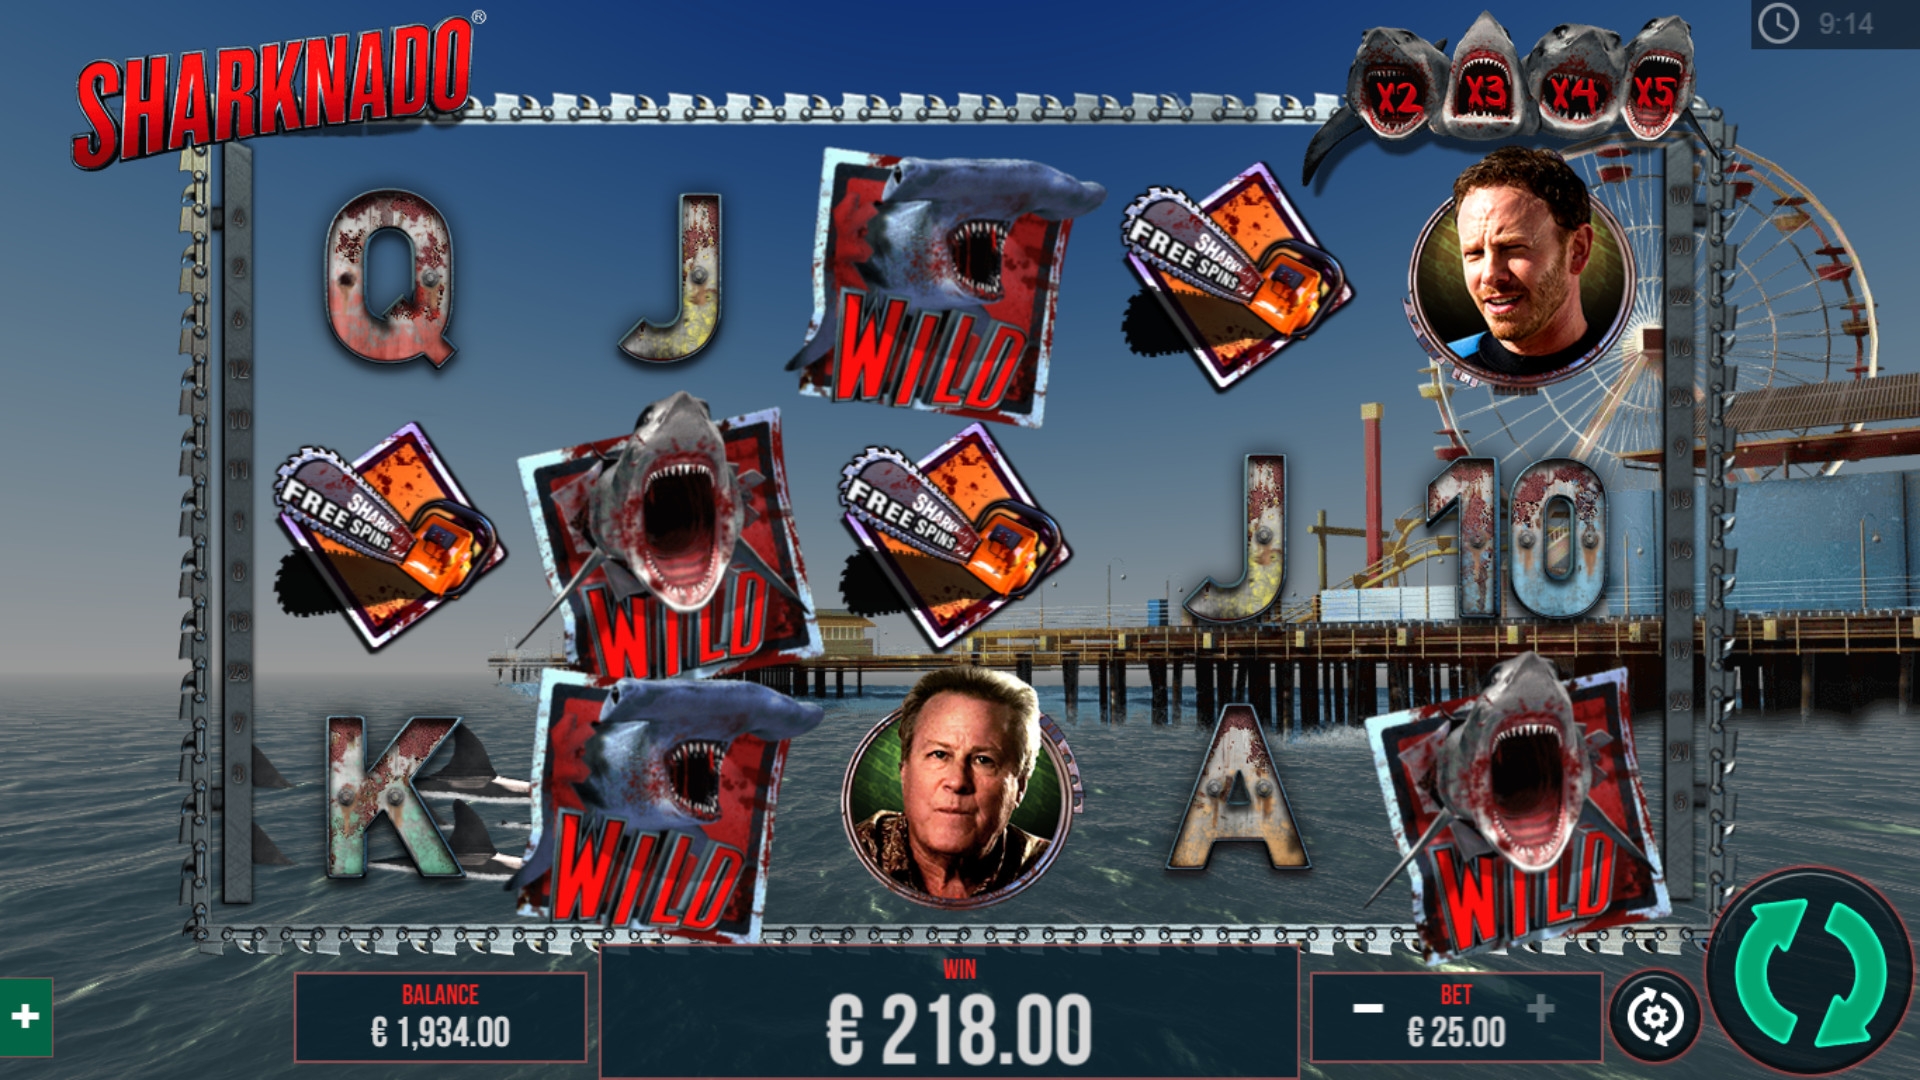 Sharknado (Sharknado) from category Slots